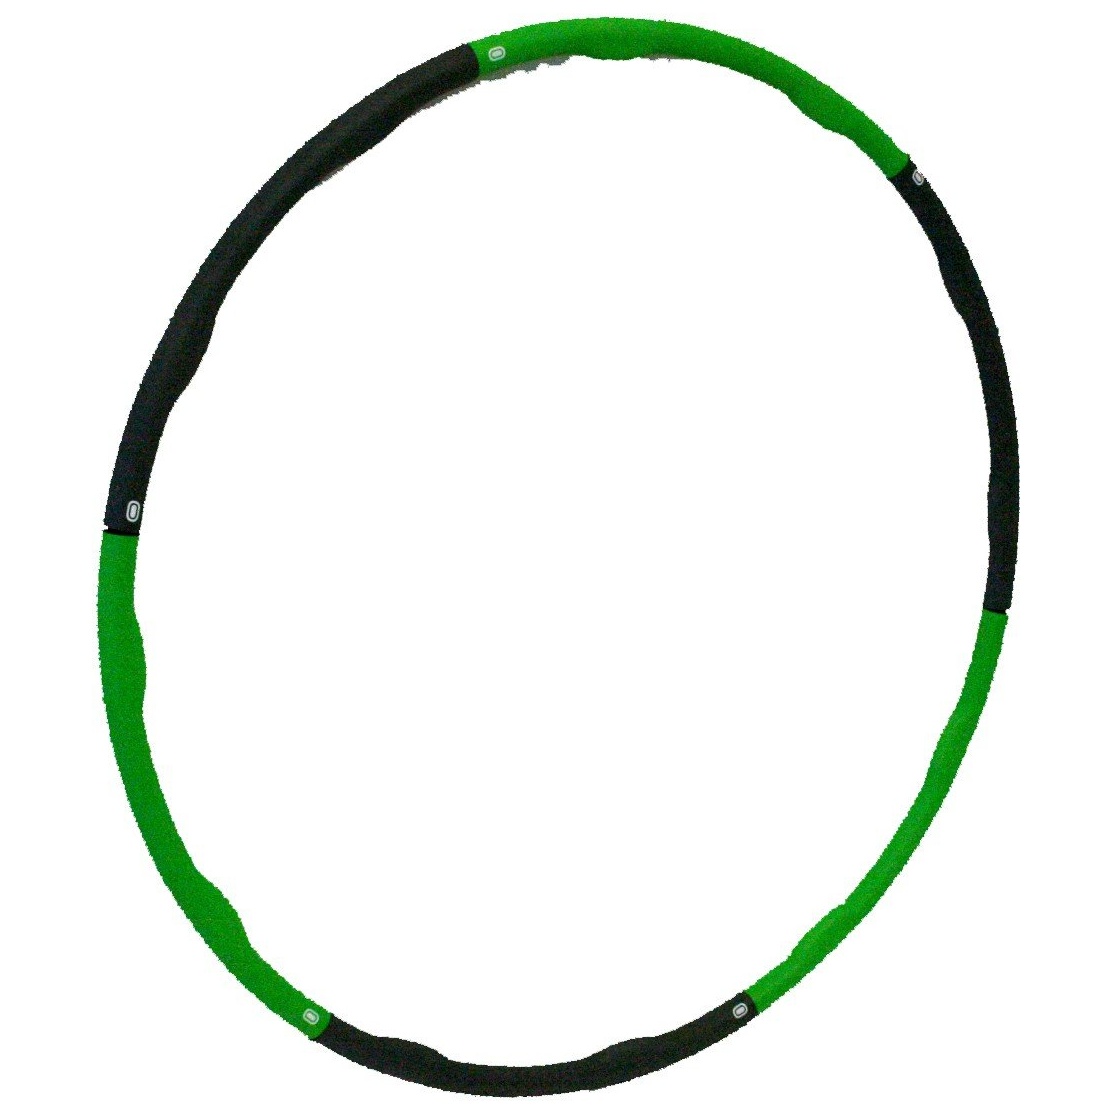 Bild Hula Hoop Reifen grau/grün (960035)